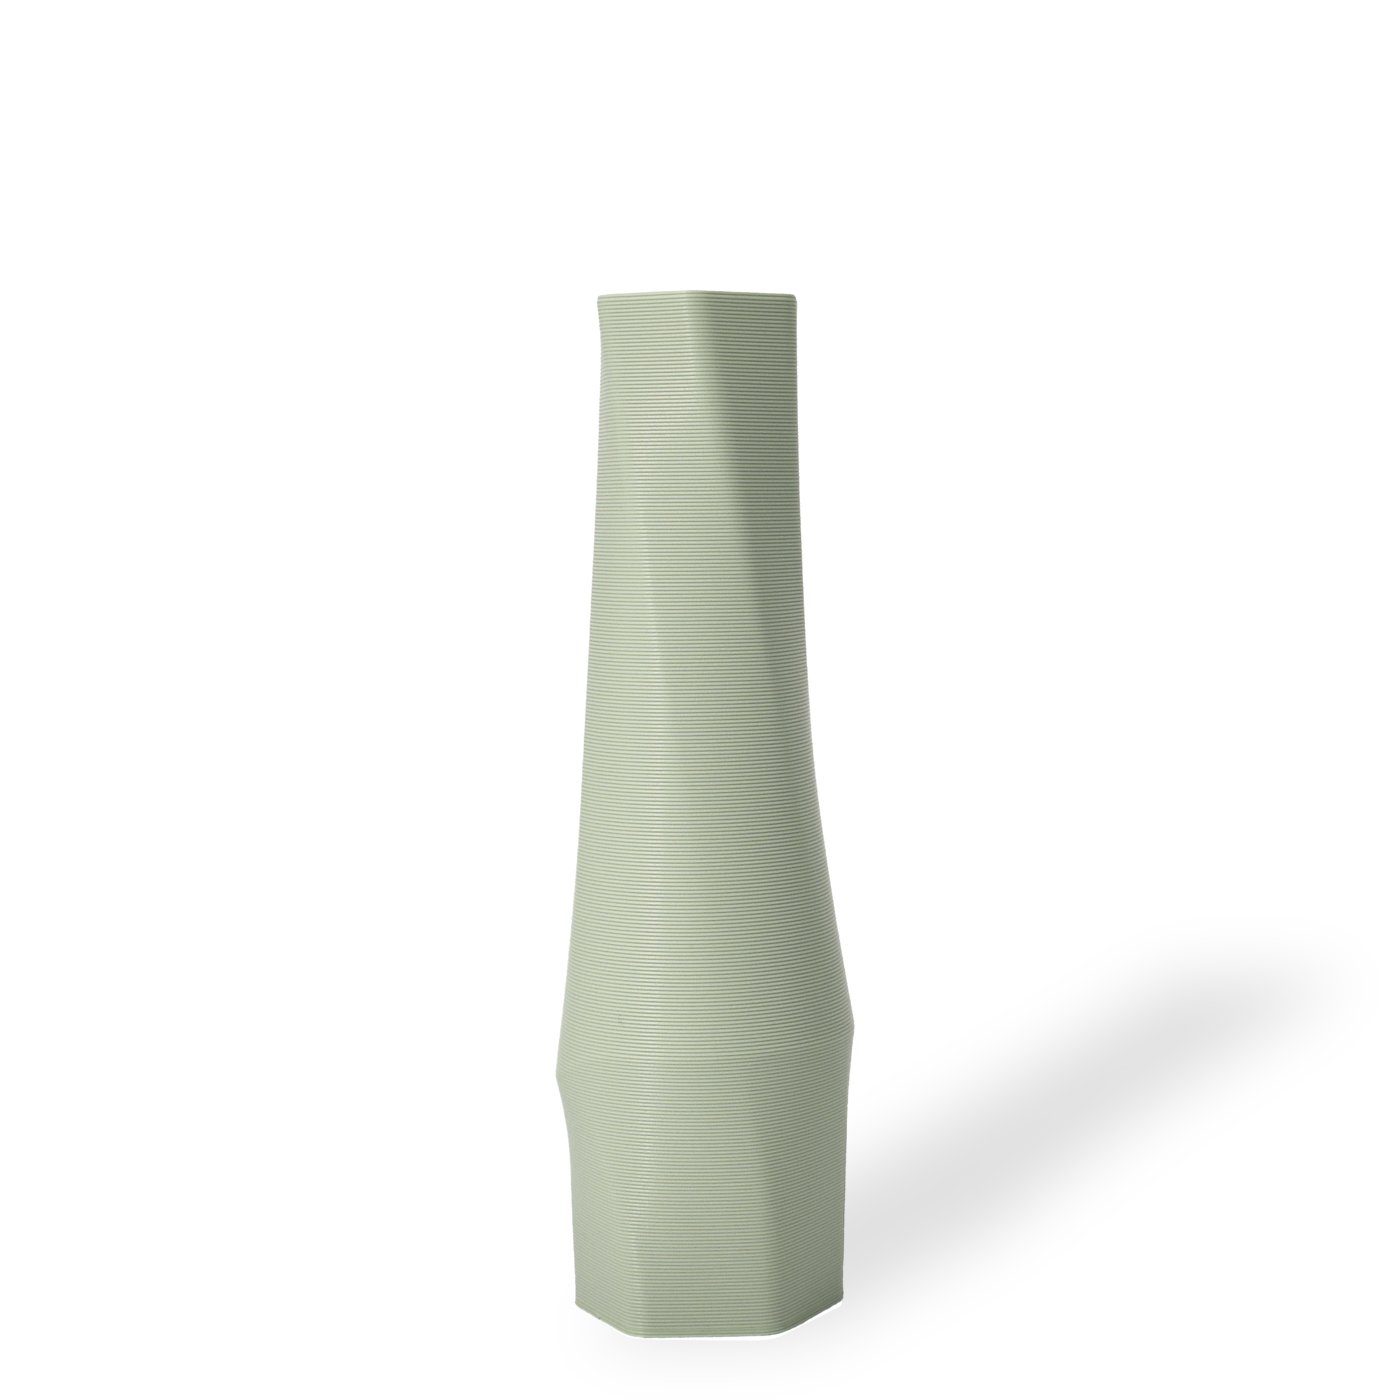 Shapes - Decorations Dekovase the vase - hexagon (basic), 3D Vasen, viele Farben, 100% 3D-Druck (Einzelmodell, 1 Vase), Wasserdicht; Leichte Struktur innerhalb des Materials (Rillung) Mintgrün